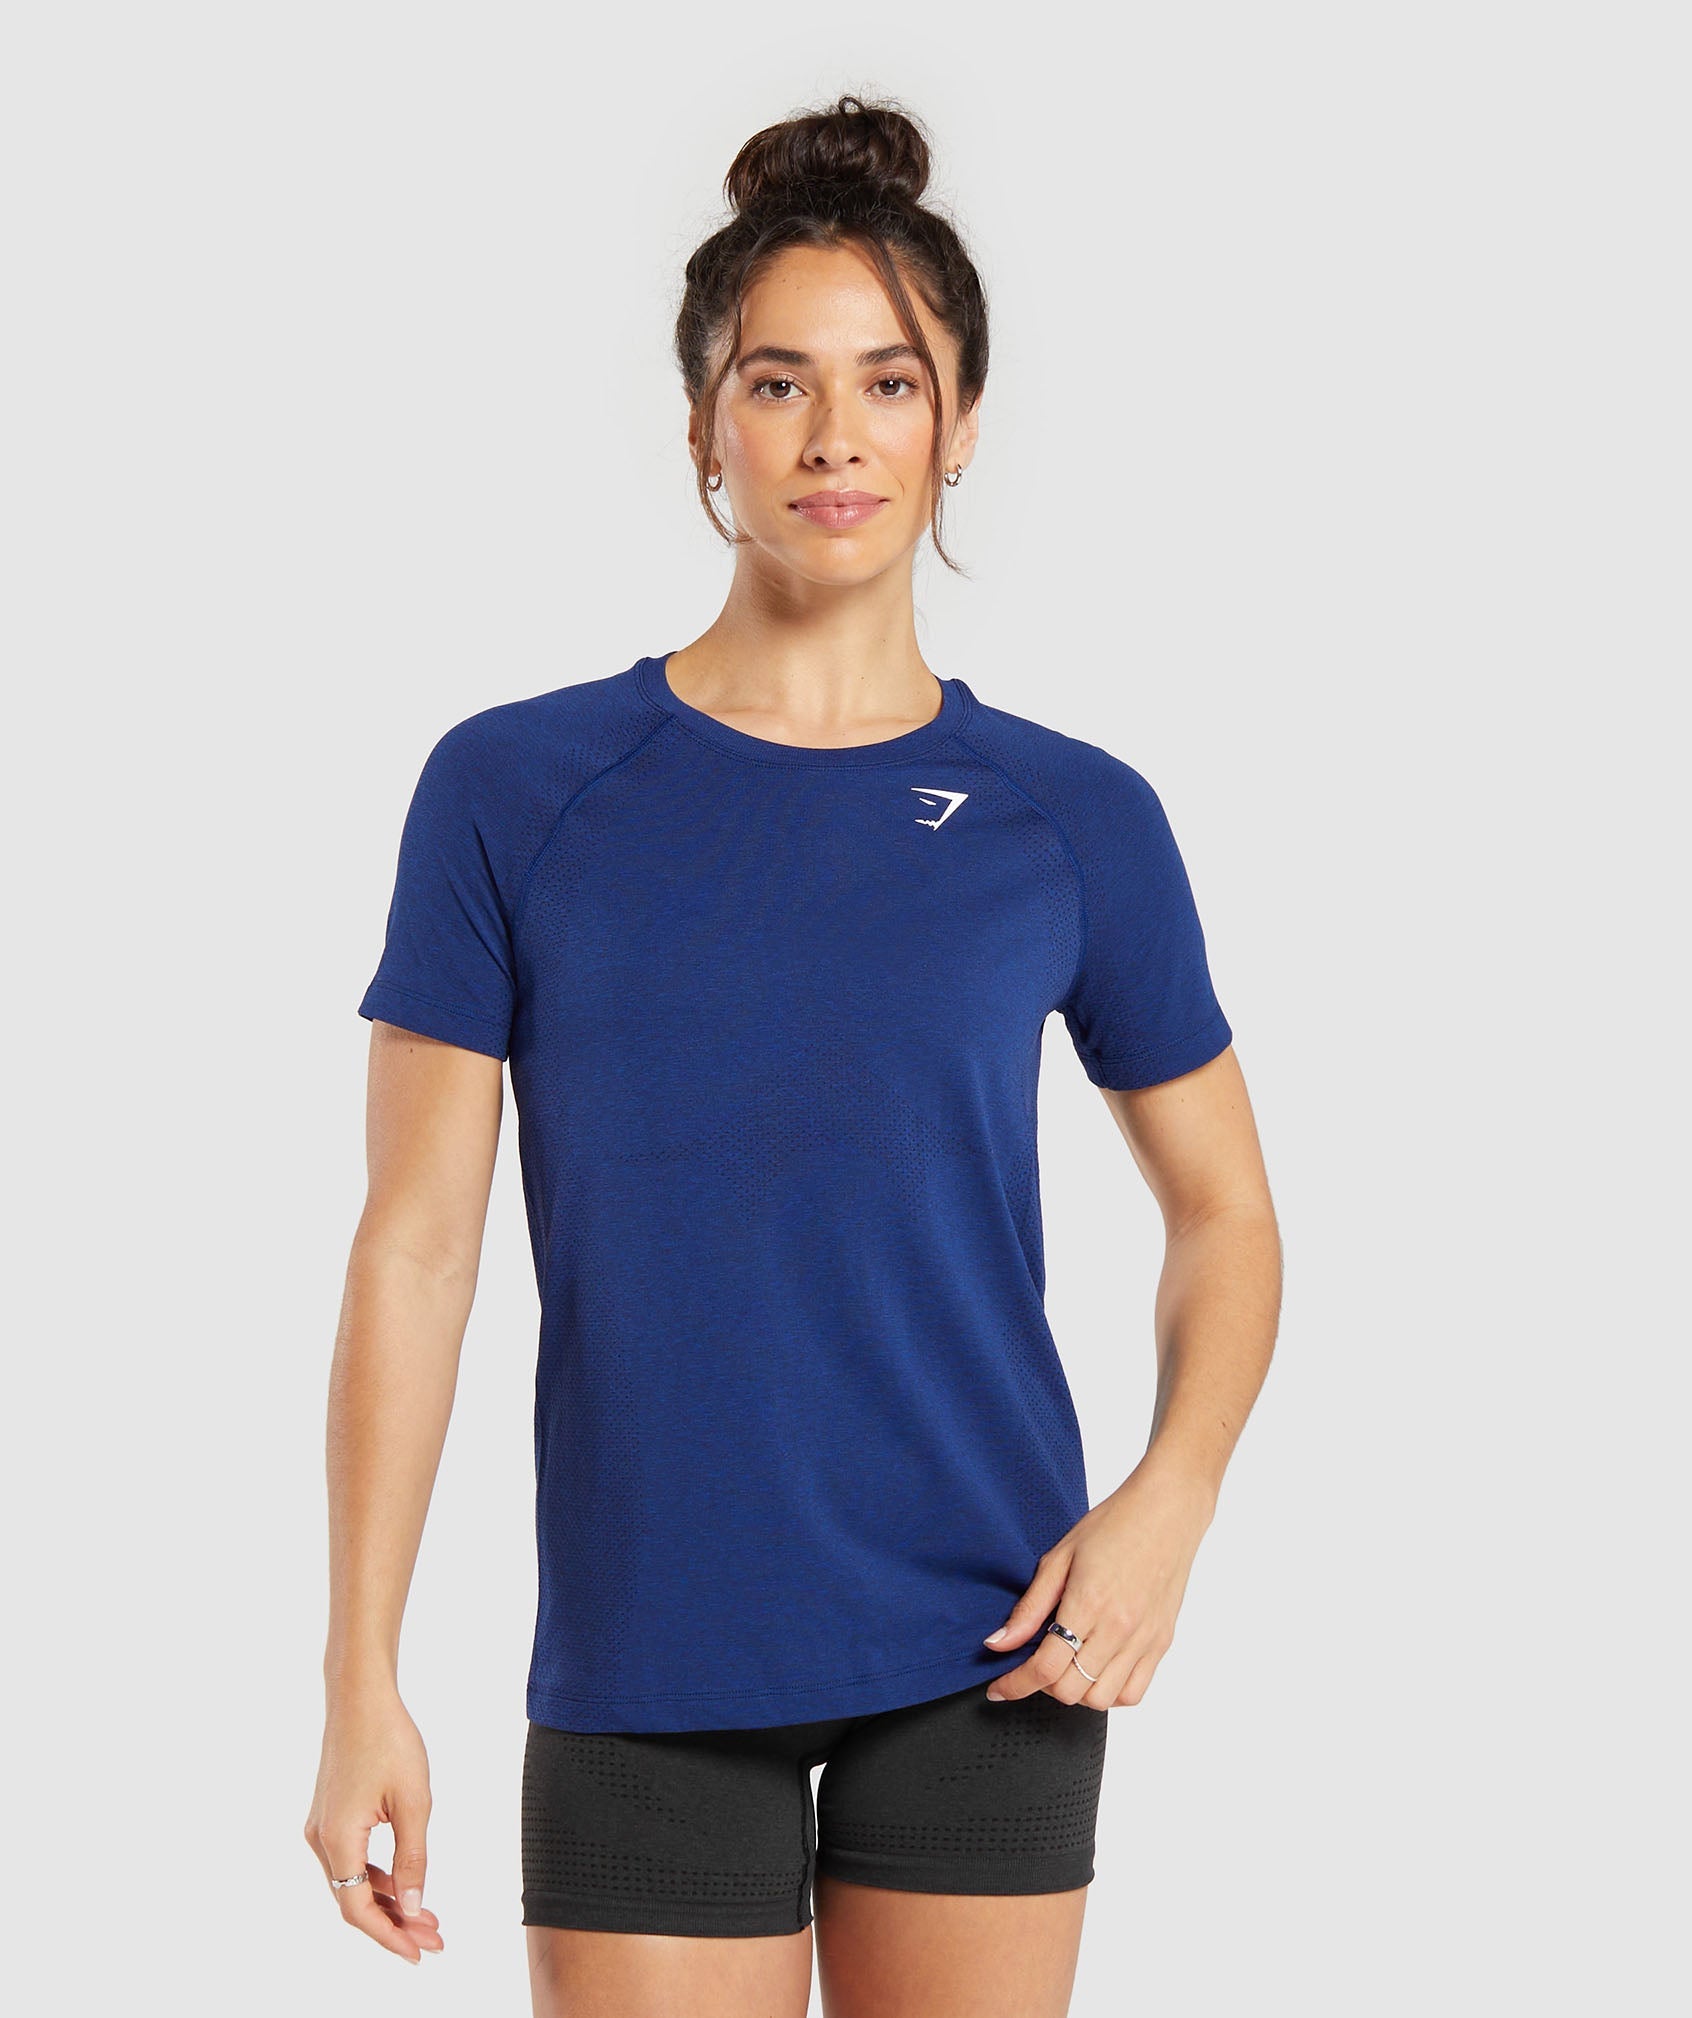 Vital Seamless 2.0 Light T-Shirt in Stellar Blue Marl